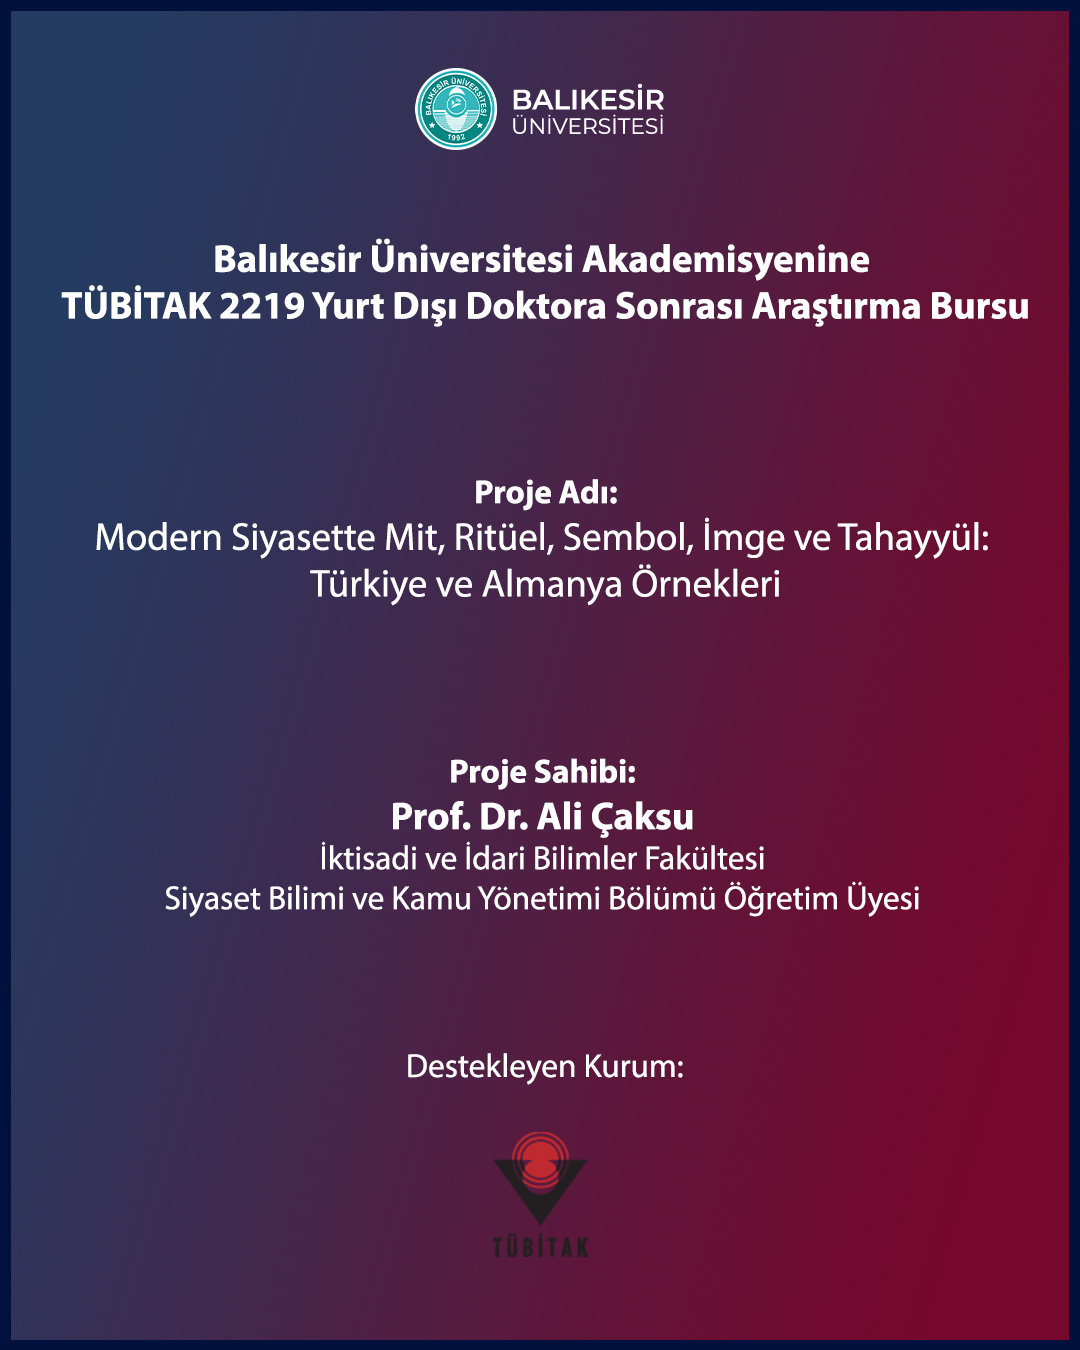 Balıkesir Üniversitesi Akademisyeni Prestijli TÜBİTAK Araştırma Bursunu Kazandı